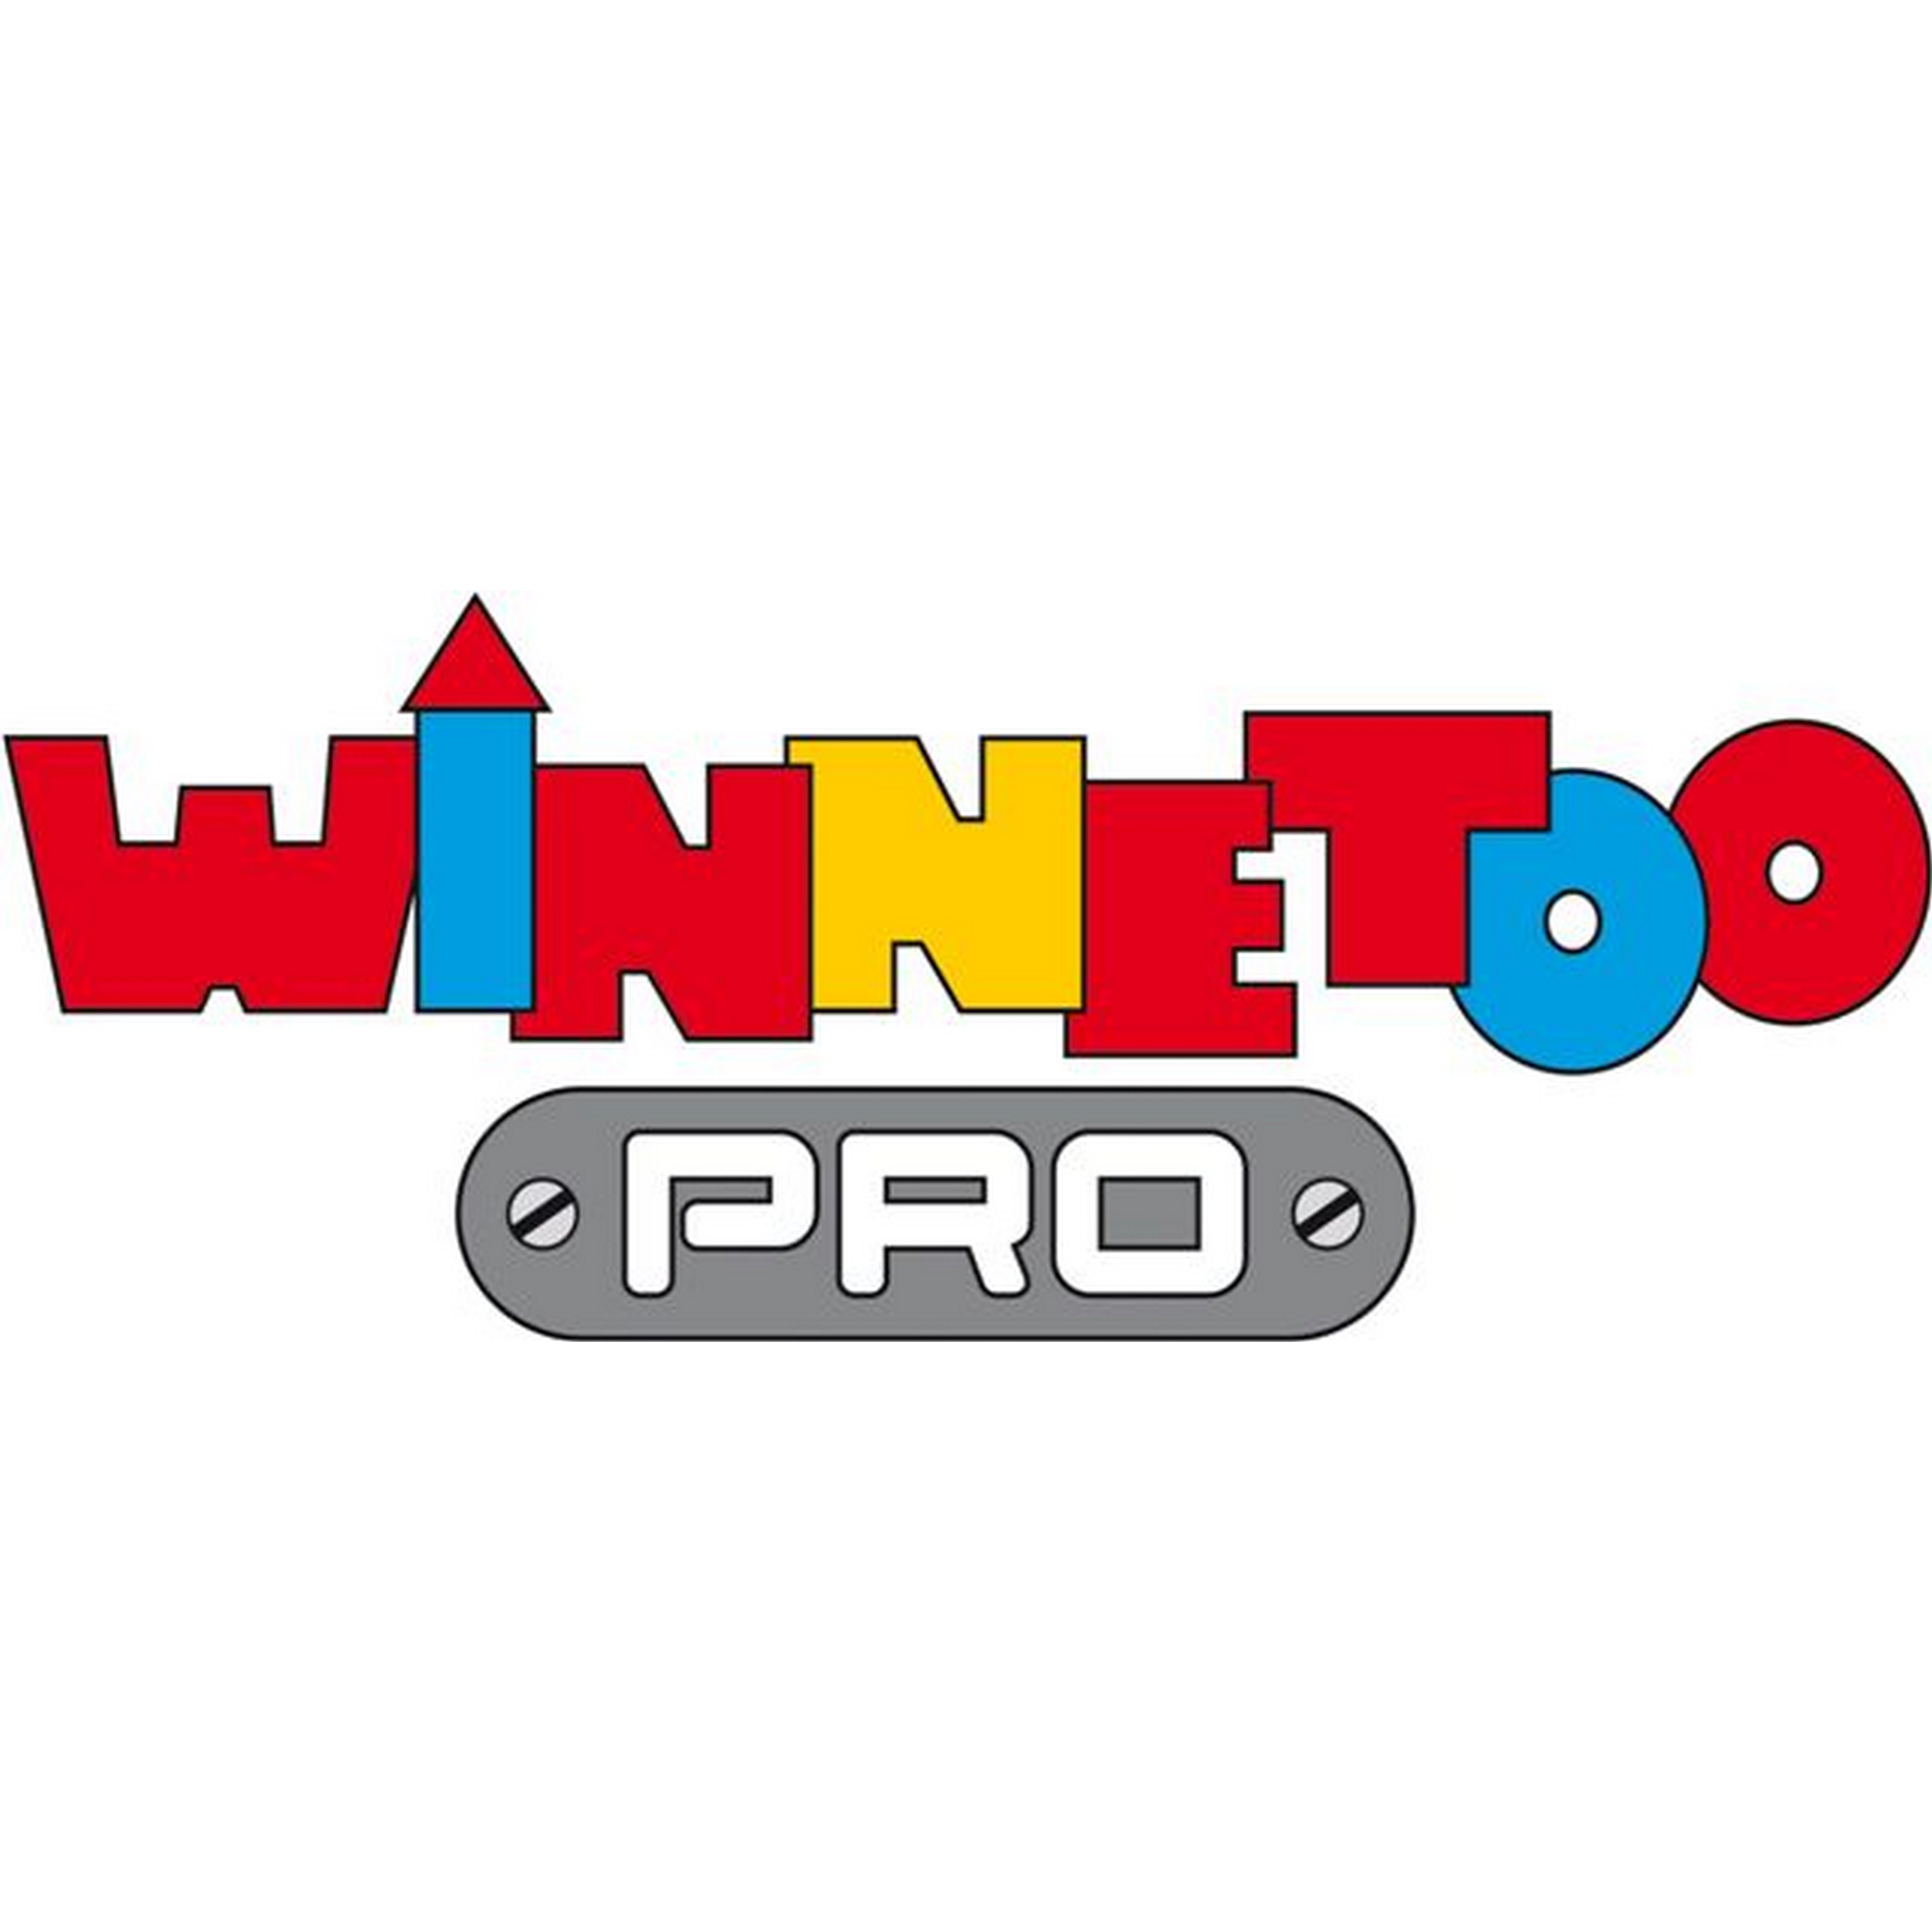 Auflagewinkel 'Winnetoo Pro' 15,8 x 6,8 x 10 x 0,8 cm, für Schaukelbalken + product picture